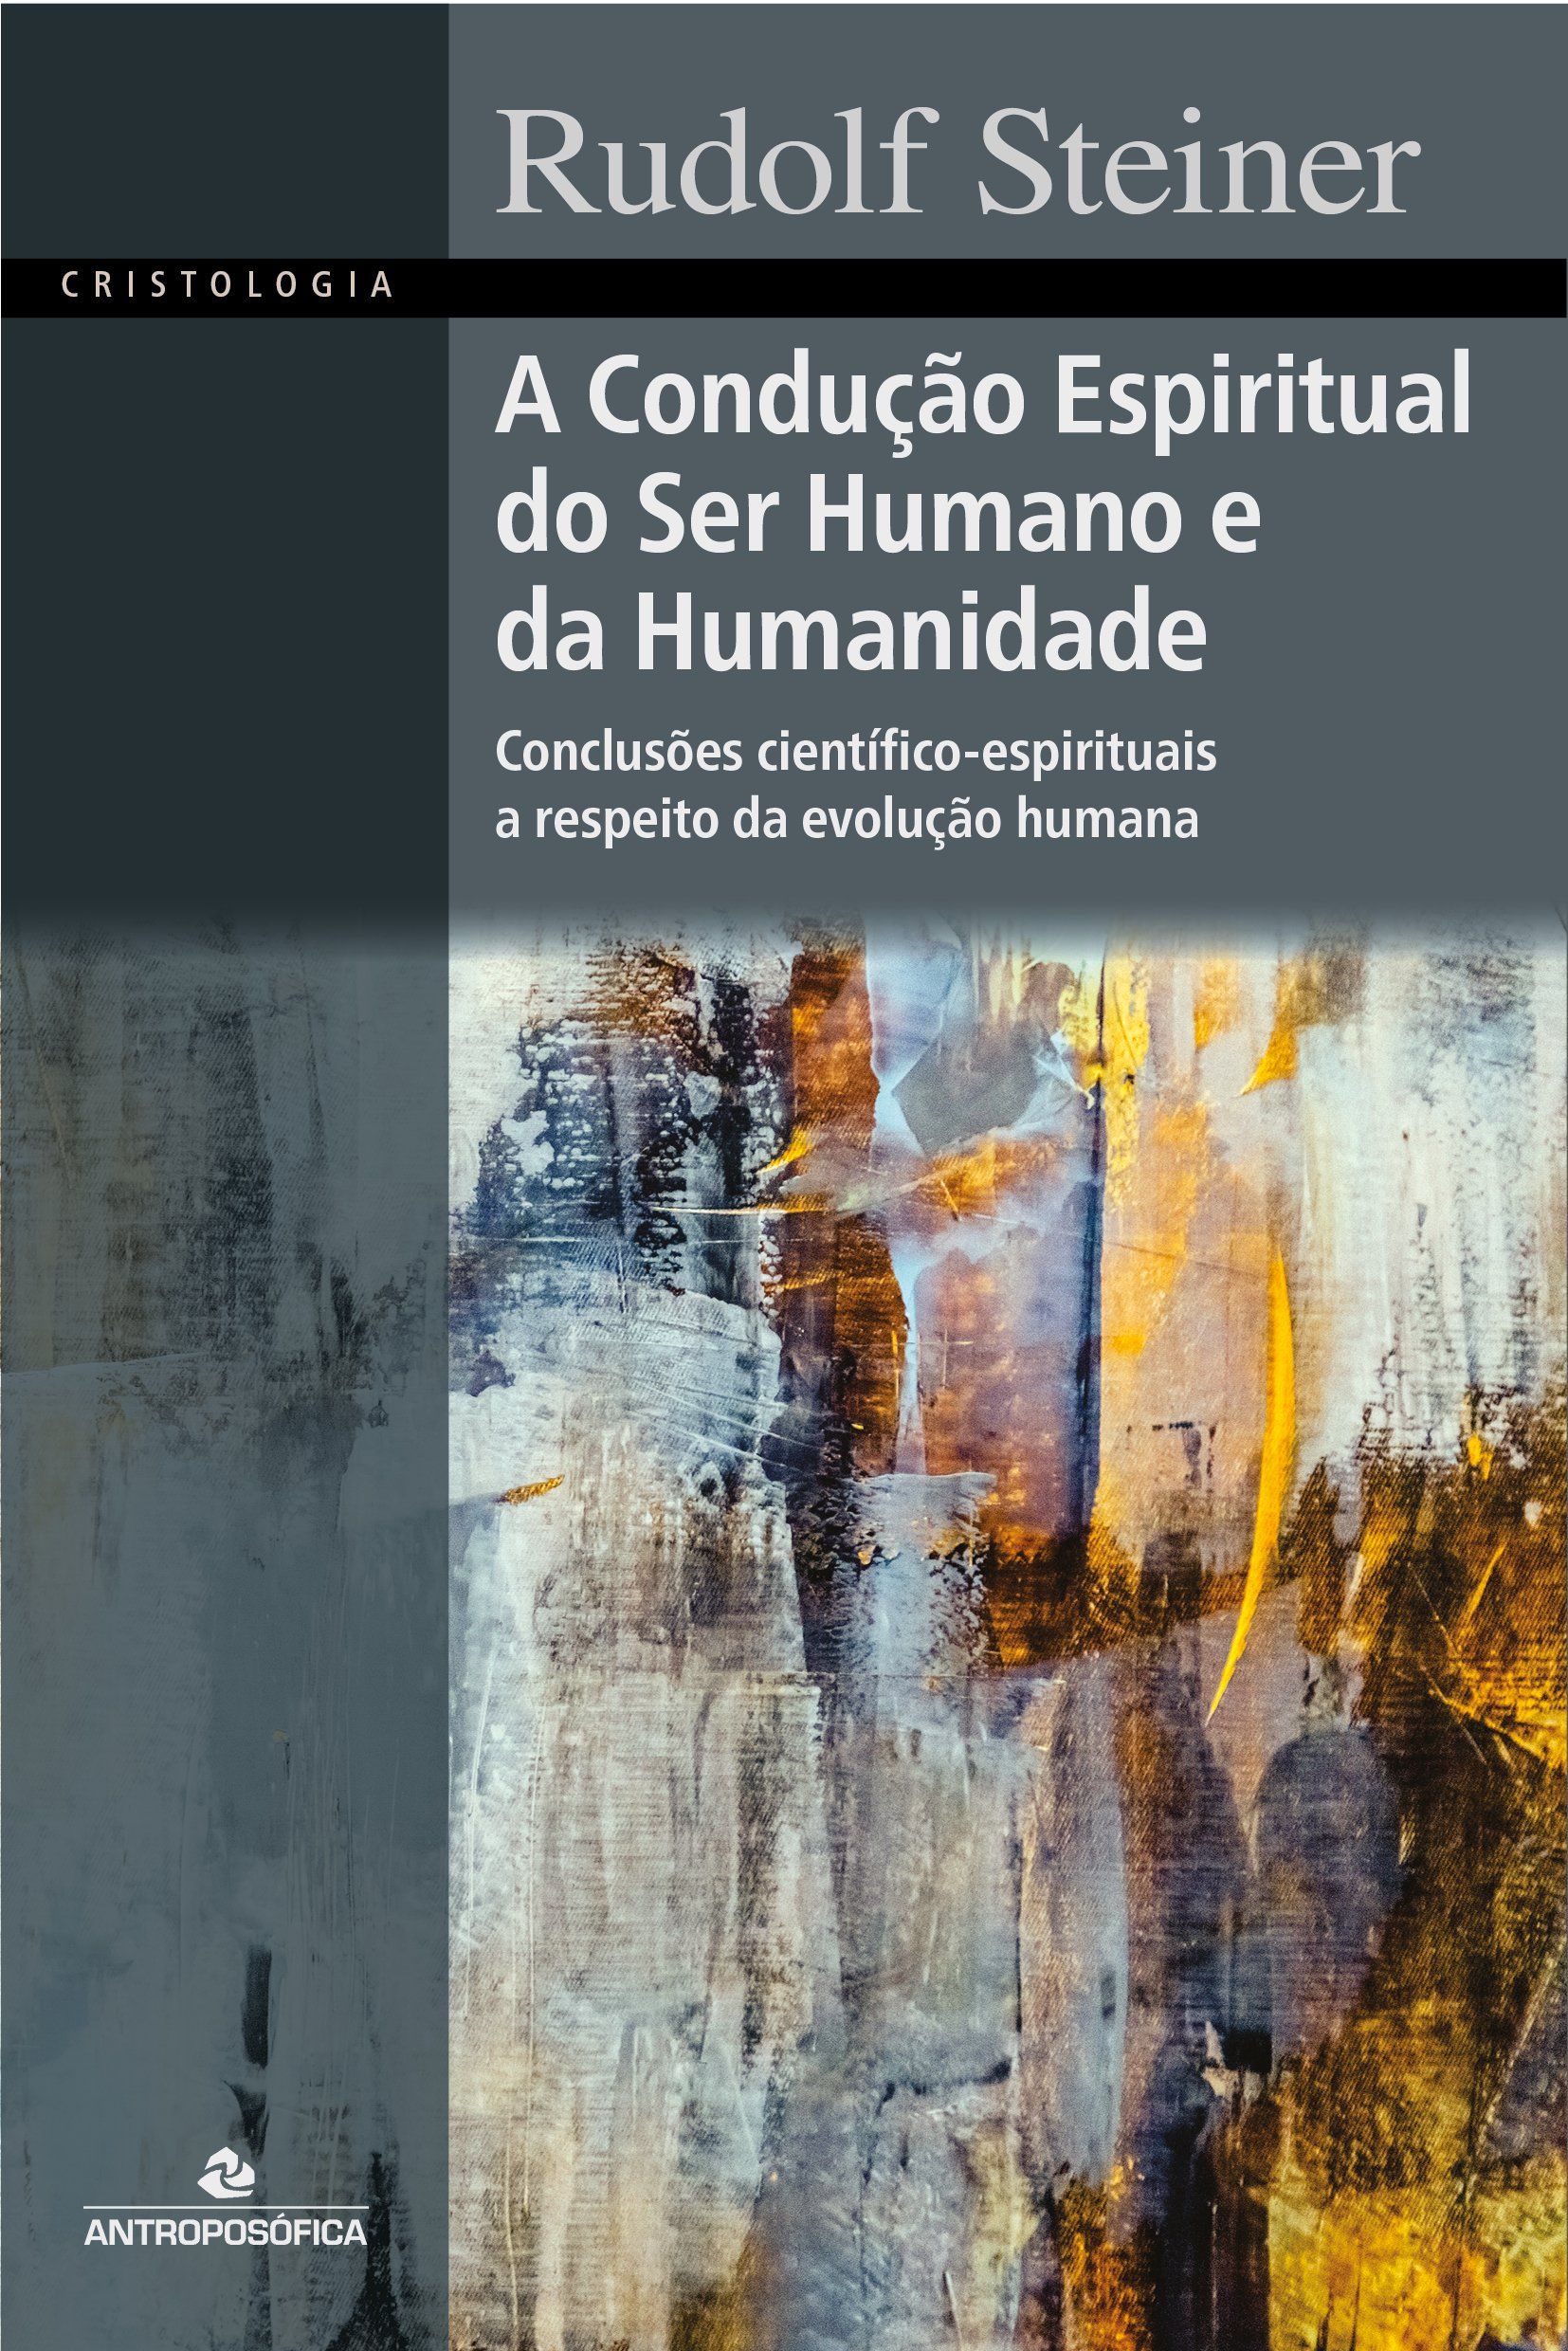 A CONDUÇÃO ESPIRITUAL DO SER HUMANO E DA HUMANIDADE - Rudolf Steiner